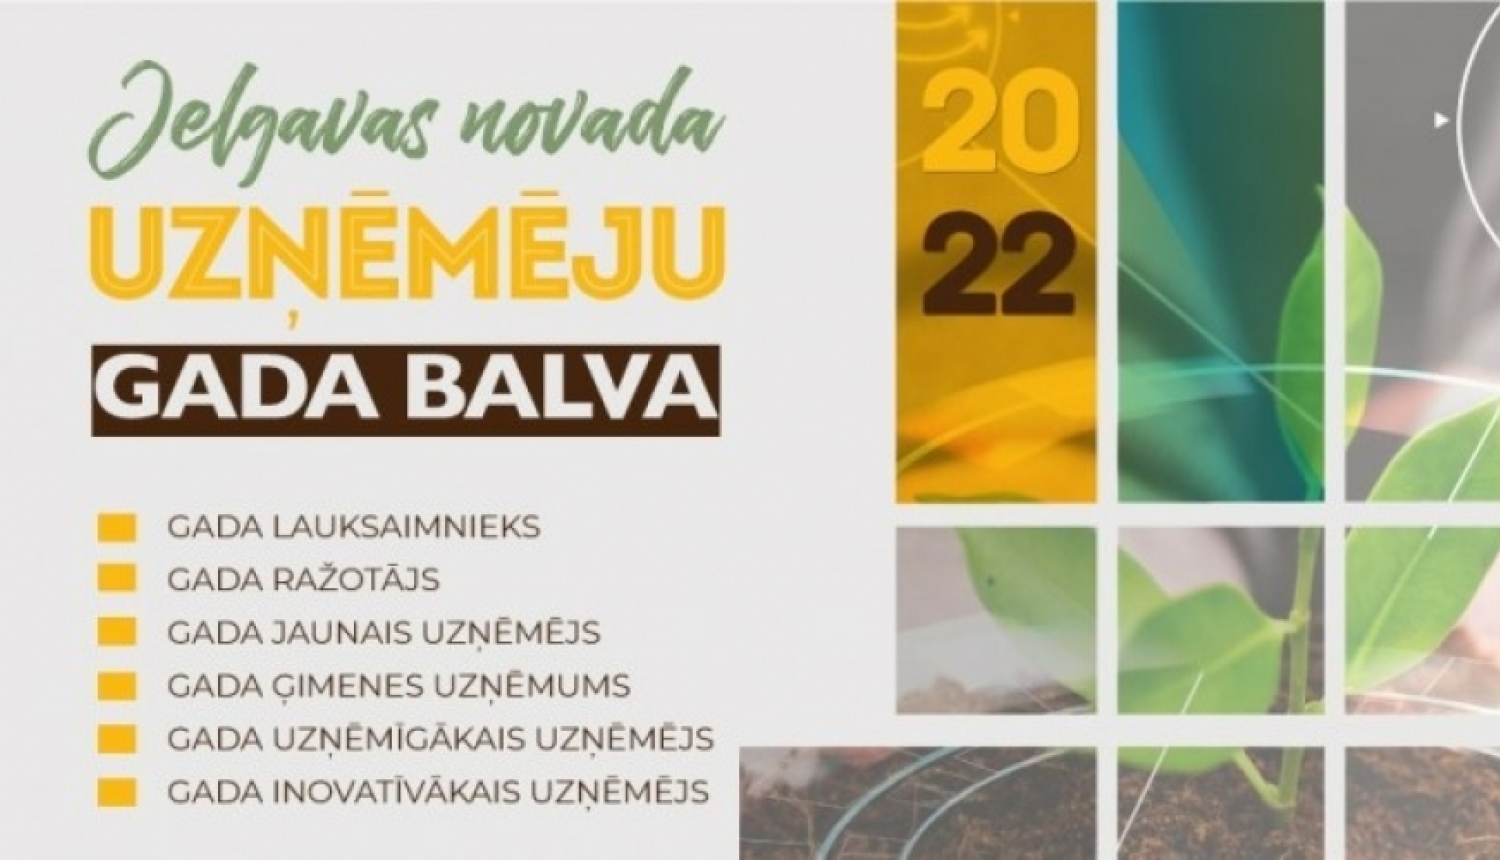 Līdz 1. septembrim piesaki uzņēmumu konkursam “Jelgavas novada Uzņēmēju gada balva 2022”!